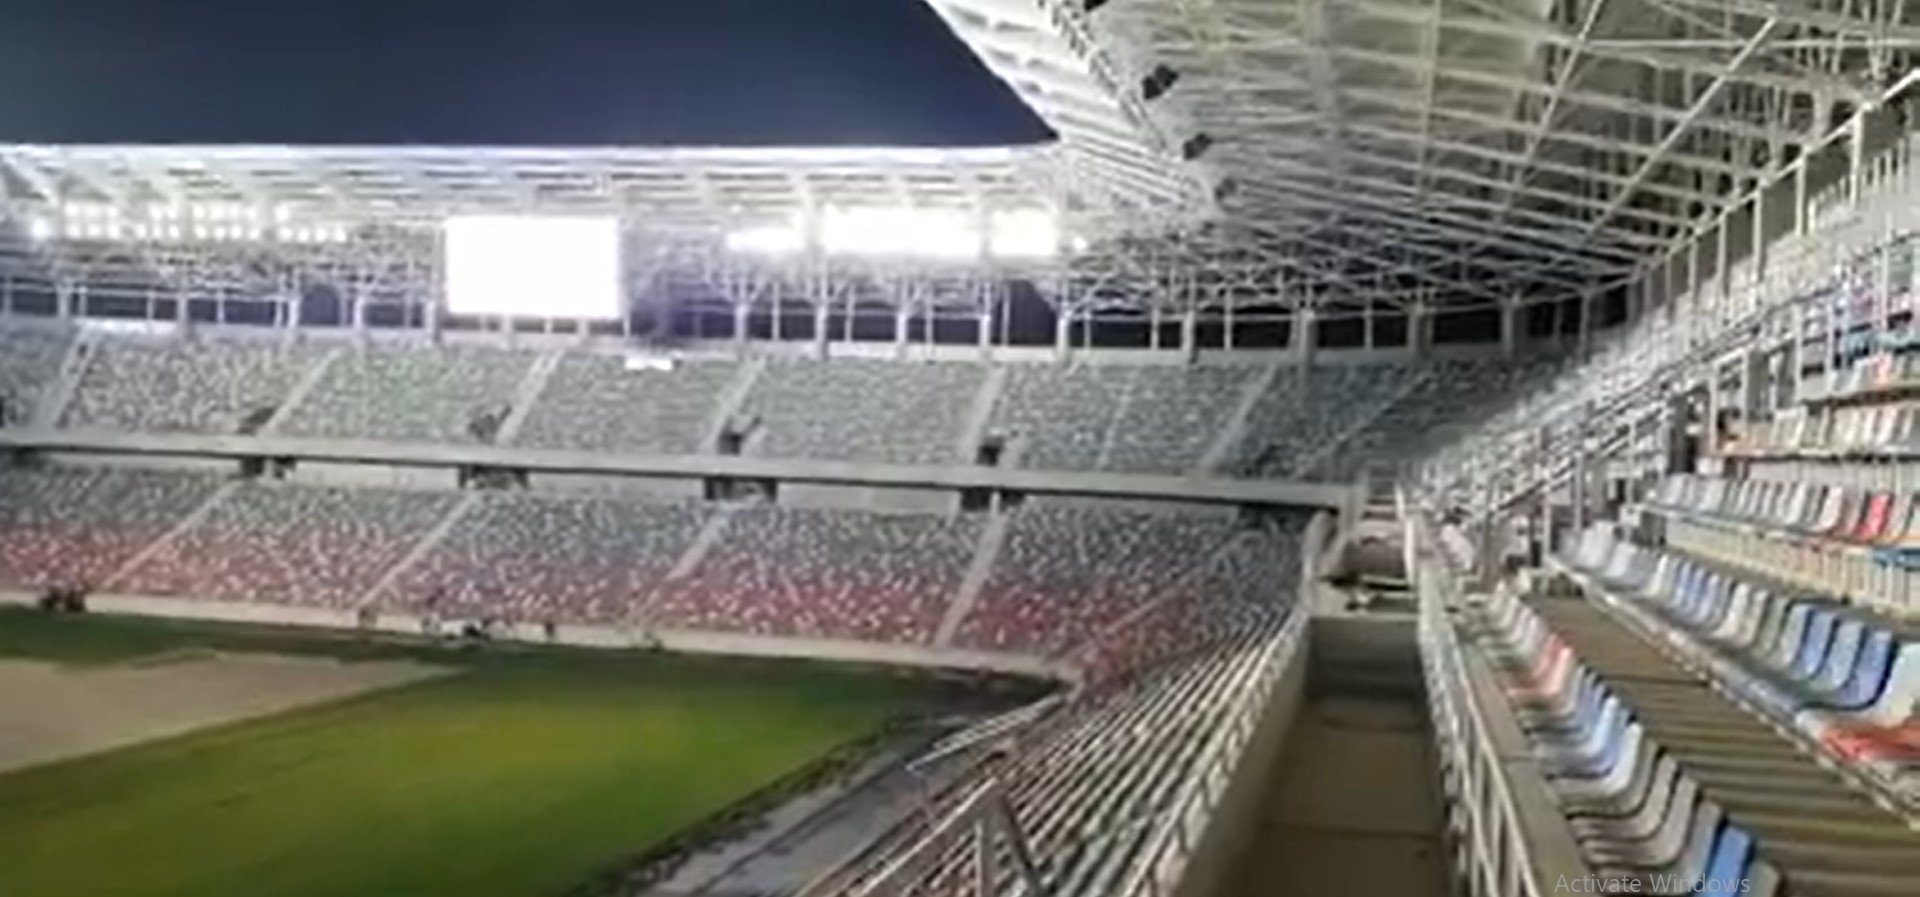  VIDEO: Imagini spectaculoase cu noua arenă Ghencea: se fac probe de sunet şi la nocturnă